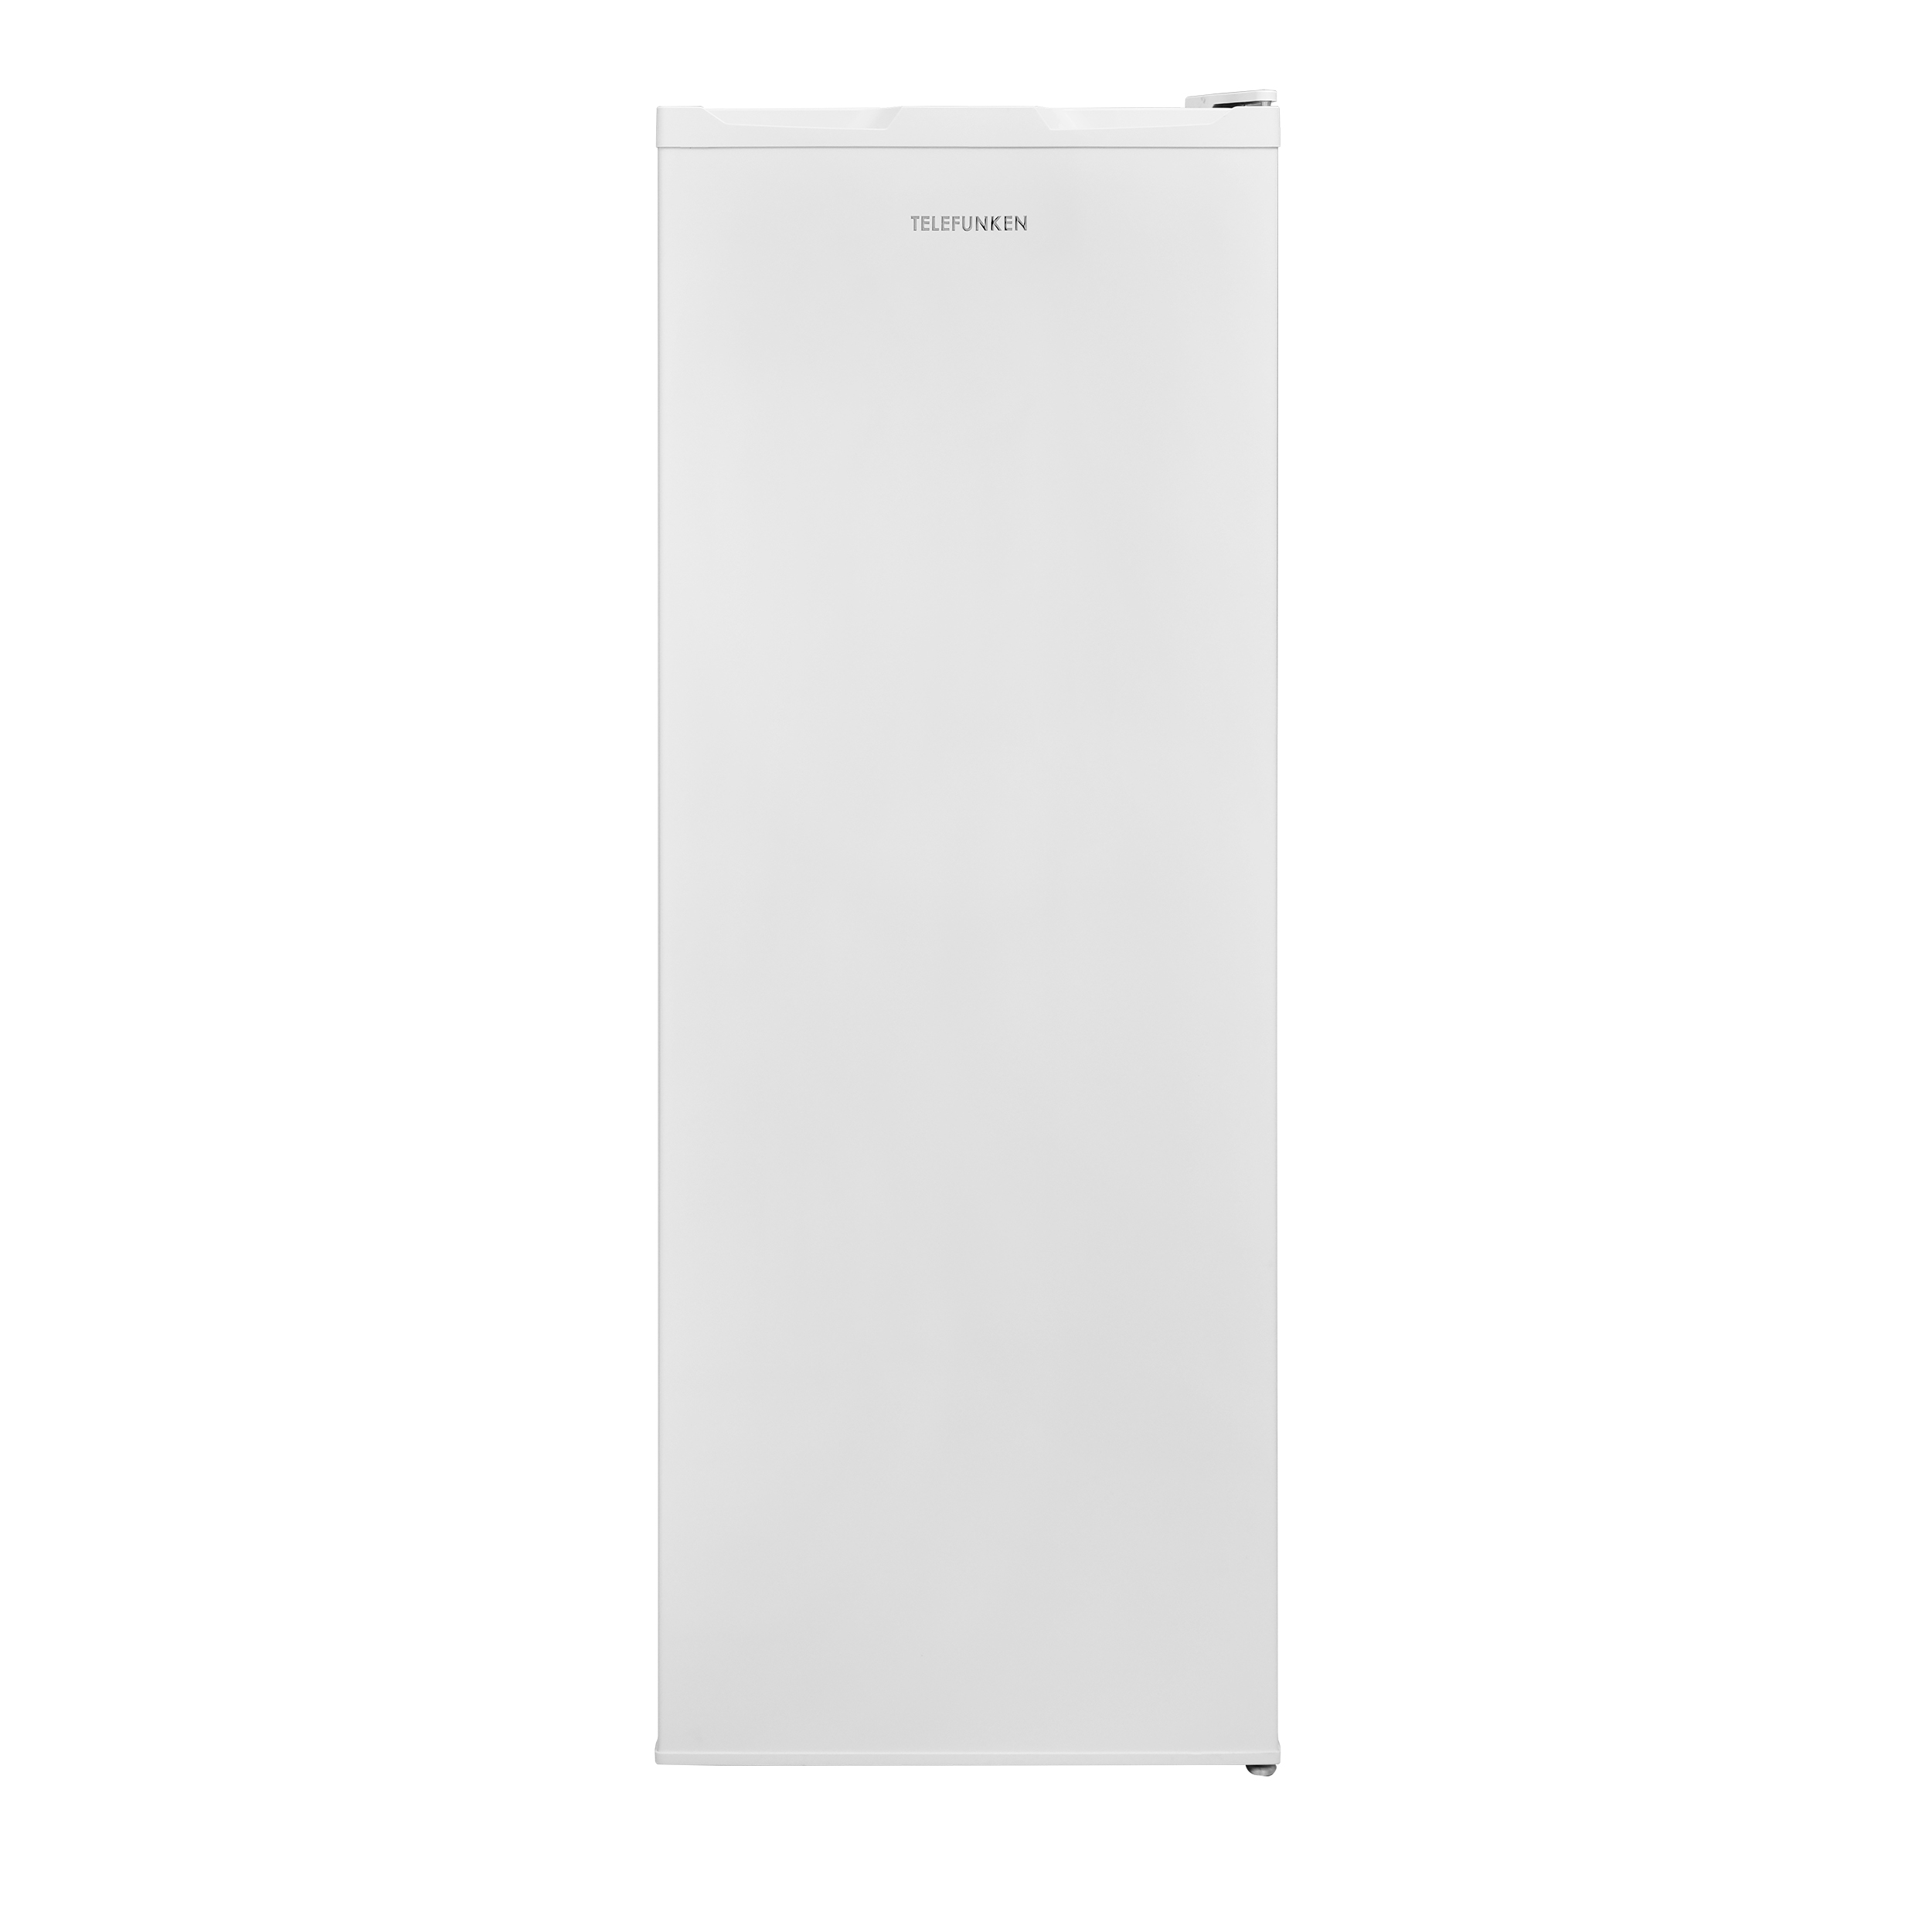 Weiß) TELEFUNKEN (F, Kühlschrank KTFK265FW2 hoch, 144 cm